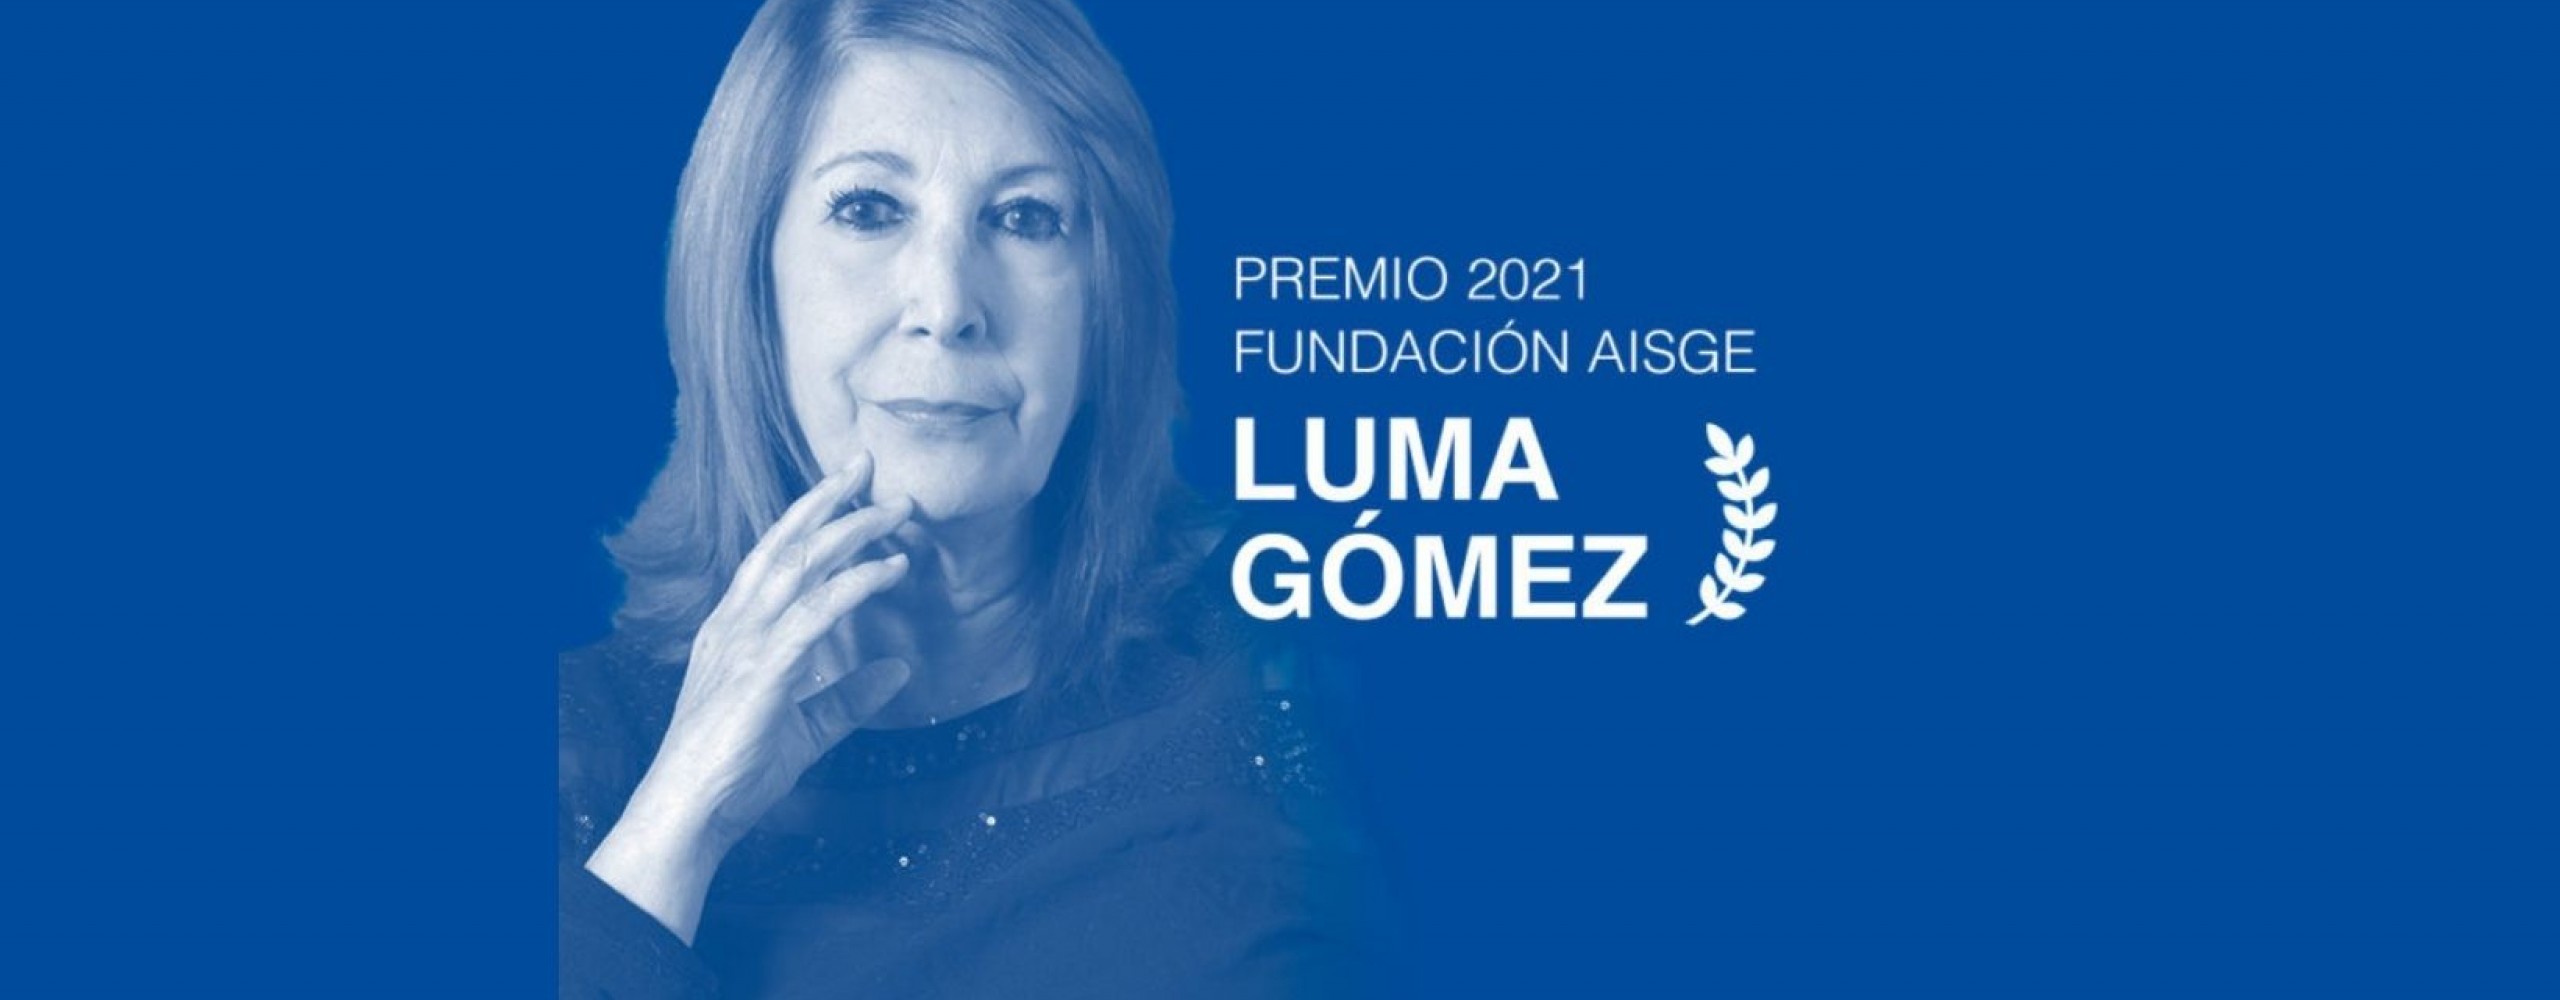 Luma Gómez, Premio de Honra da Fundación AISGE no festival de cinema de Ourense (OUFF)